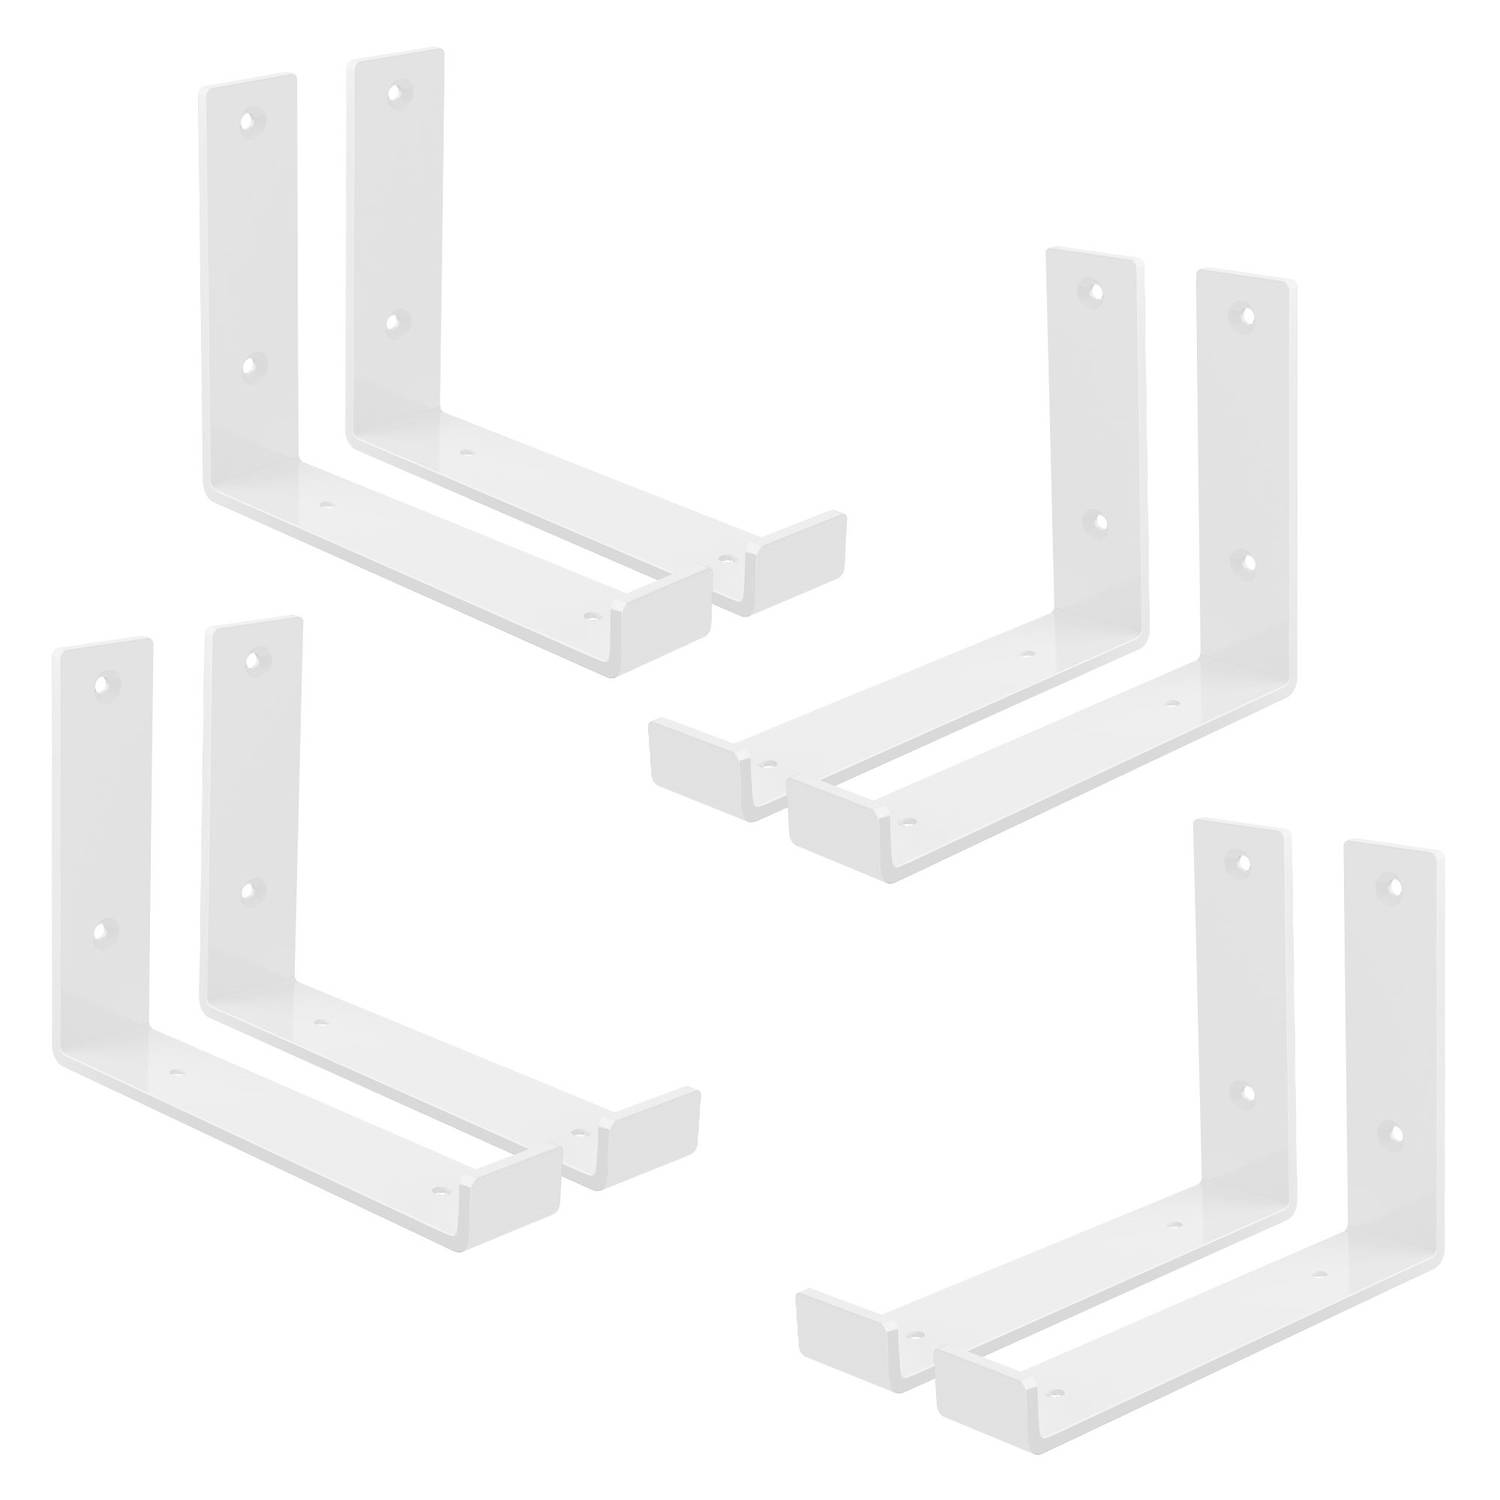 ML-Design 8-delige plankbeugel, 20x4x14 cm, wit, gemaakt van metaal, 8 inch plankbeugels, industriële plankbeugels, planksteun voor wandmontage, 90 graden wandbeugel, L-vormige wan